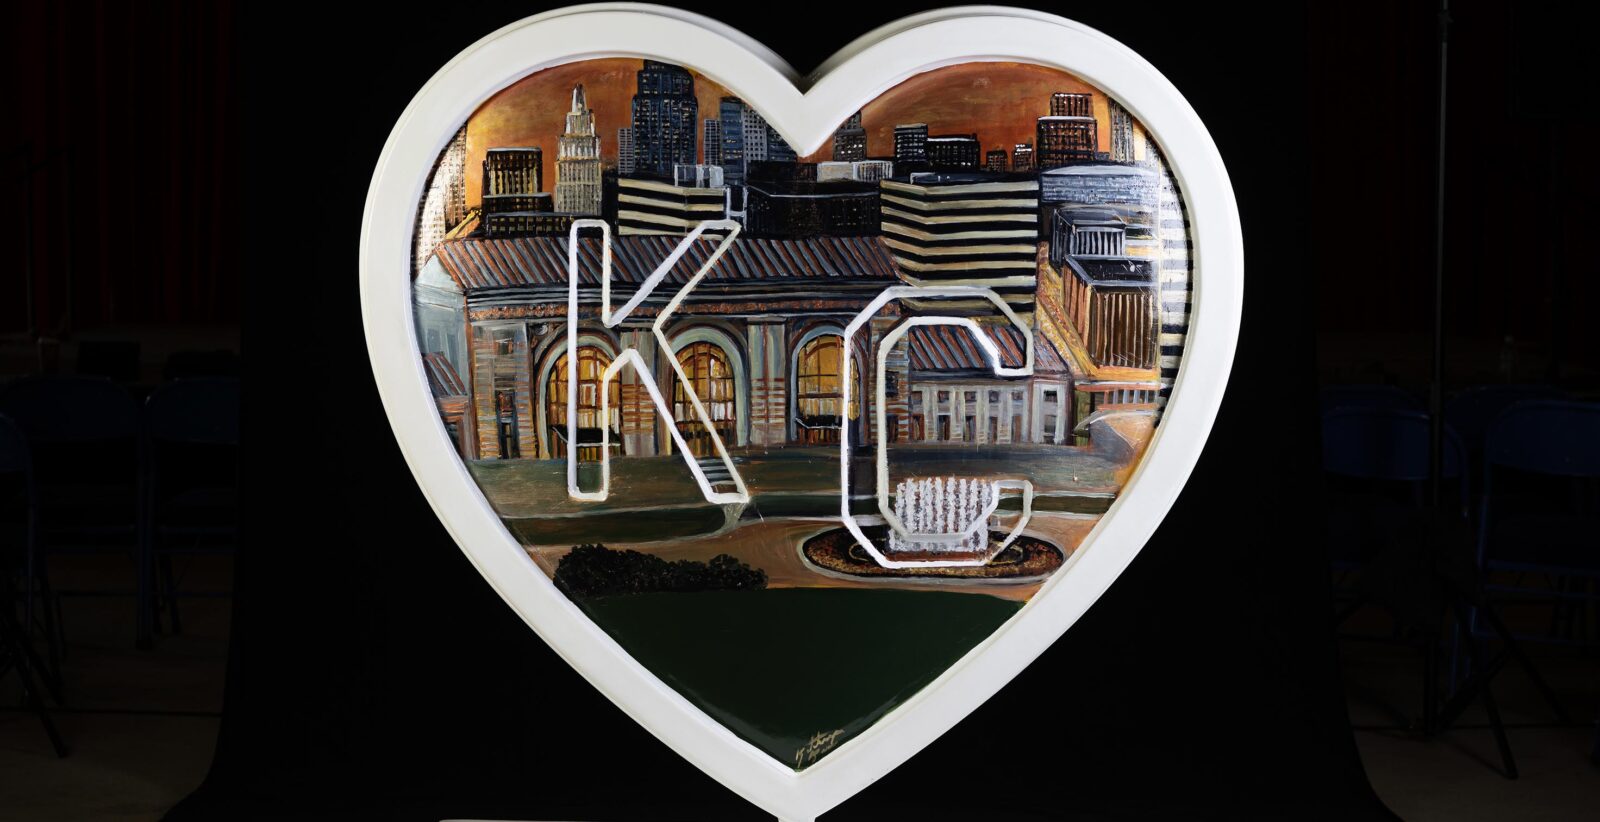 The Heart of Kansas City